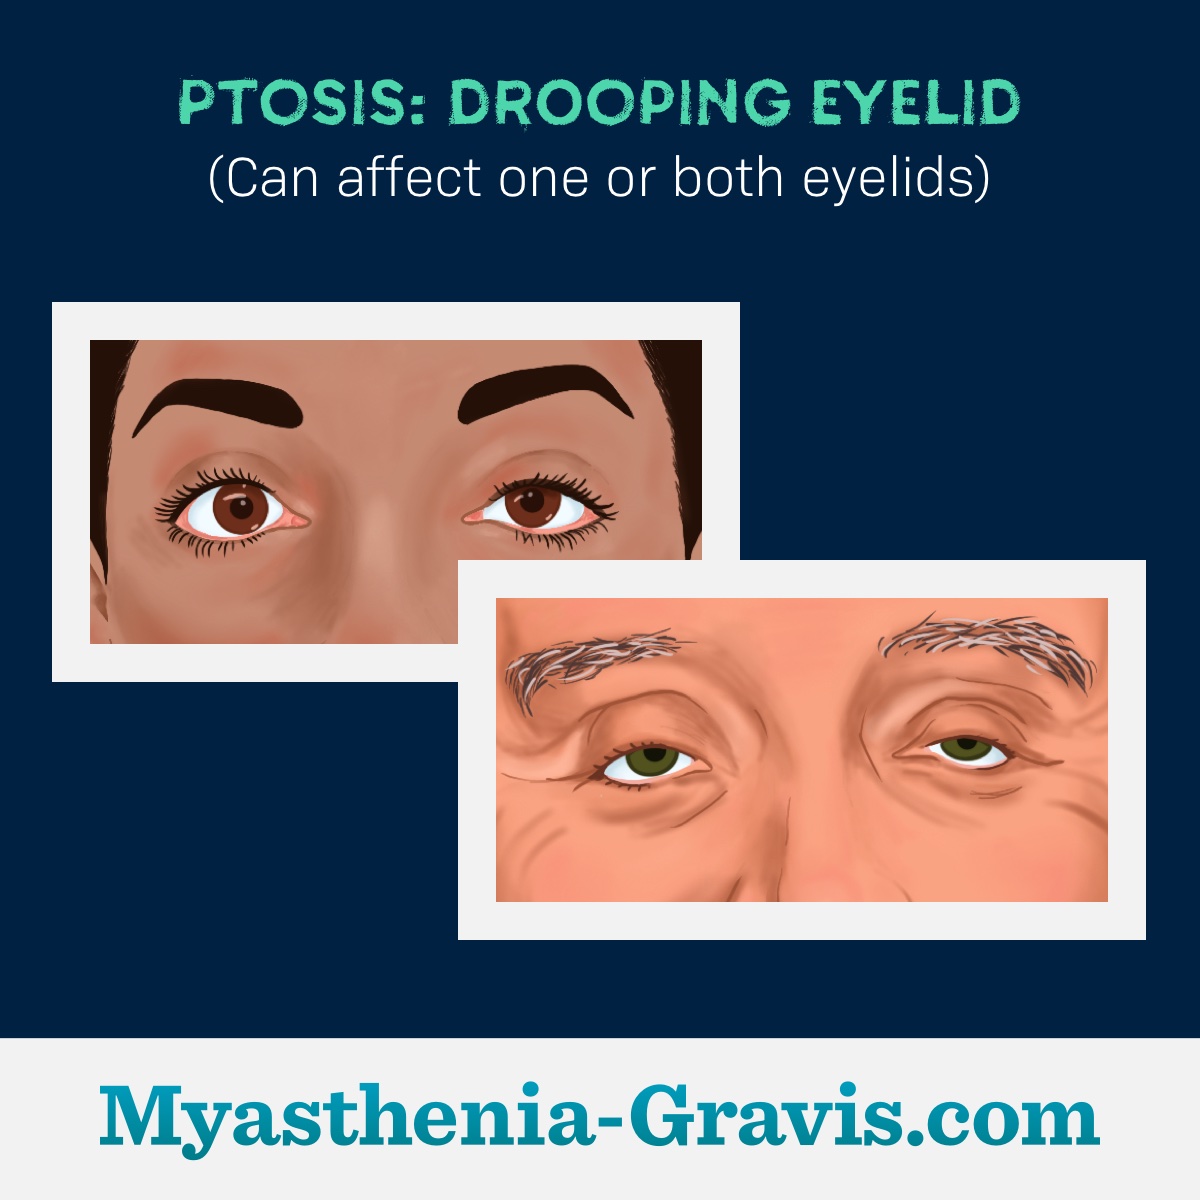 Examples of ptosis or drooping eyelids in one eye or both eyes.